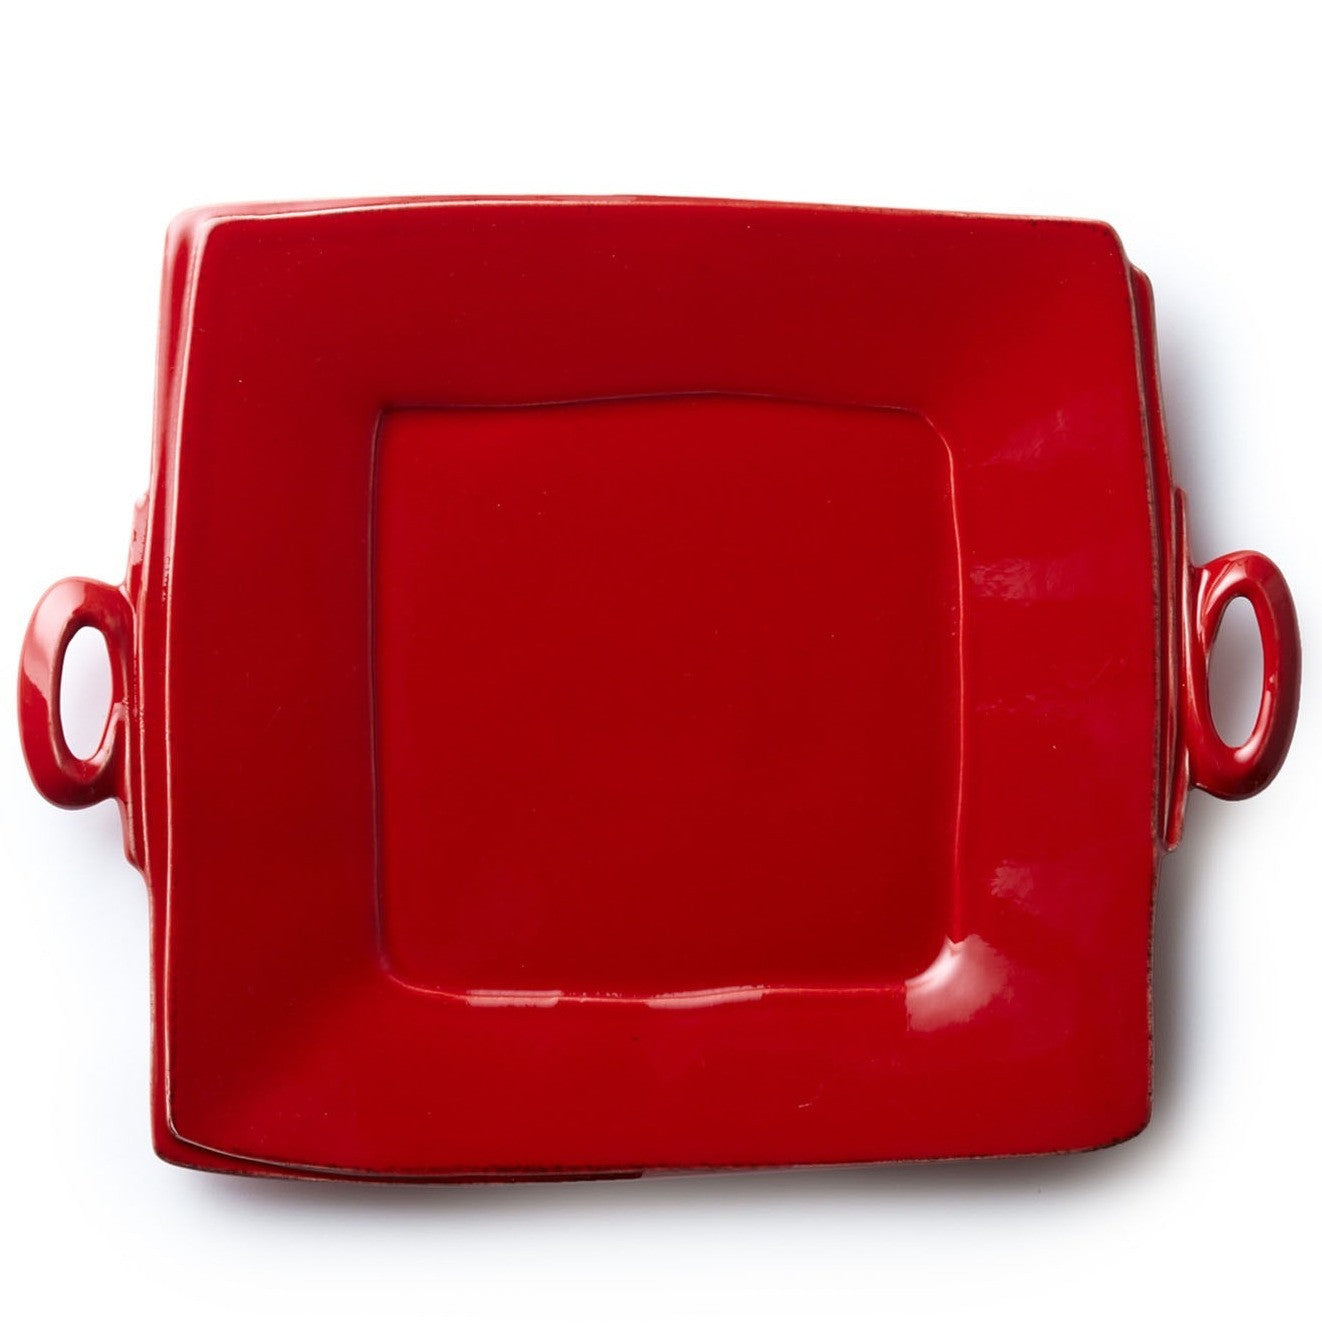 VIETRI: Lastra Red Handled Square Platter - Artistica.com